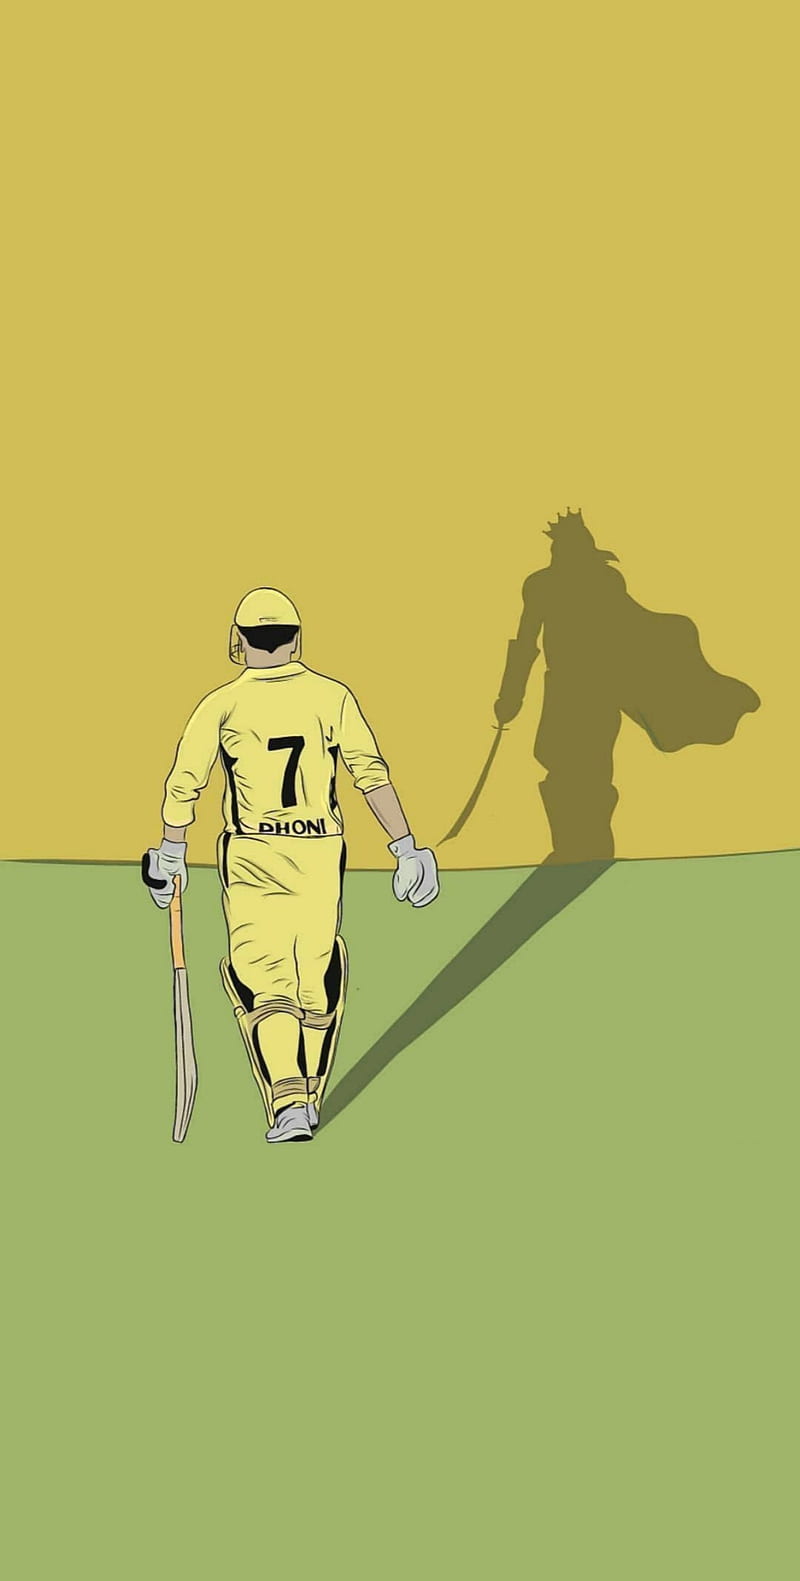 Cricket raiders by absinthe9 on DeviantArt